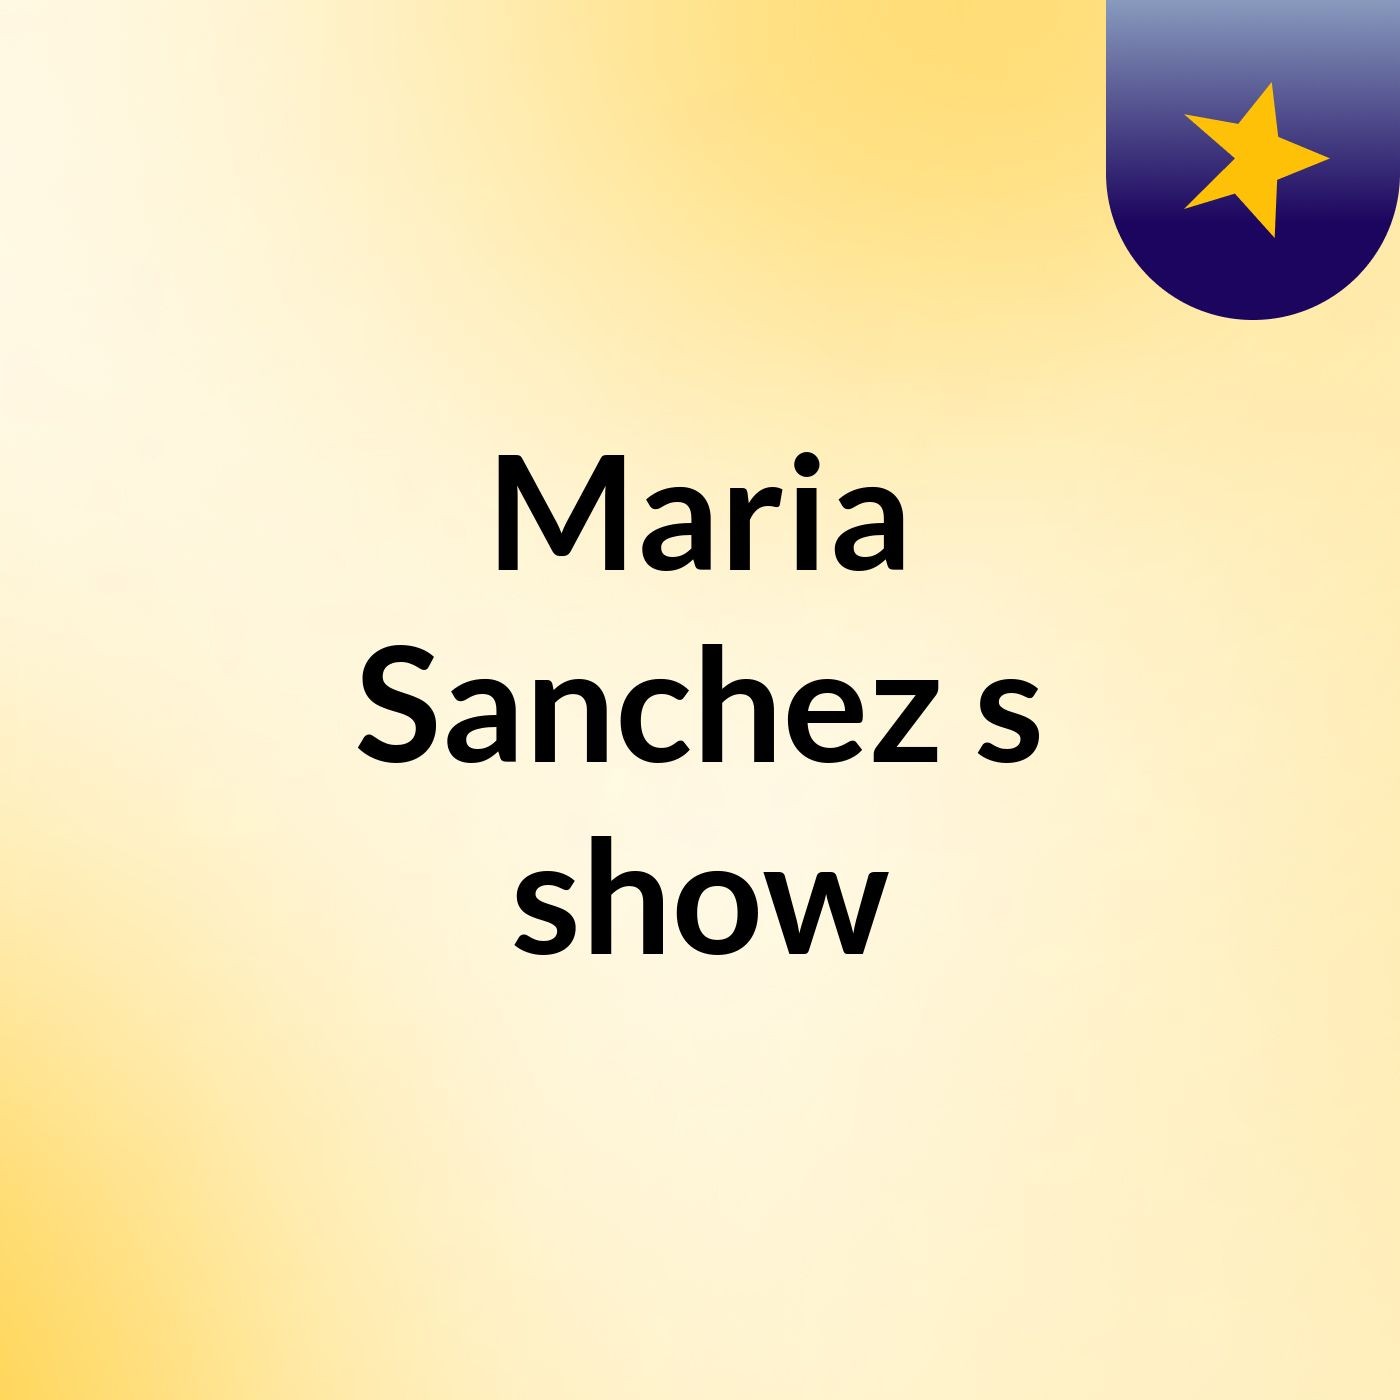 Maria Sanchez's show